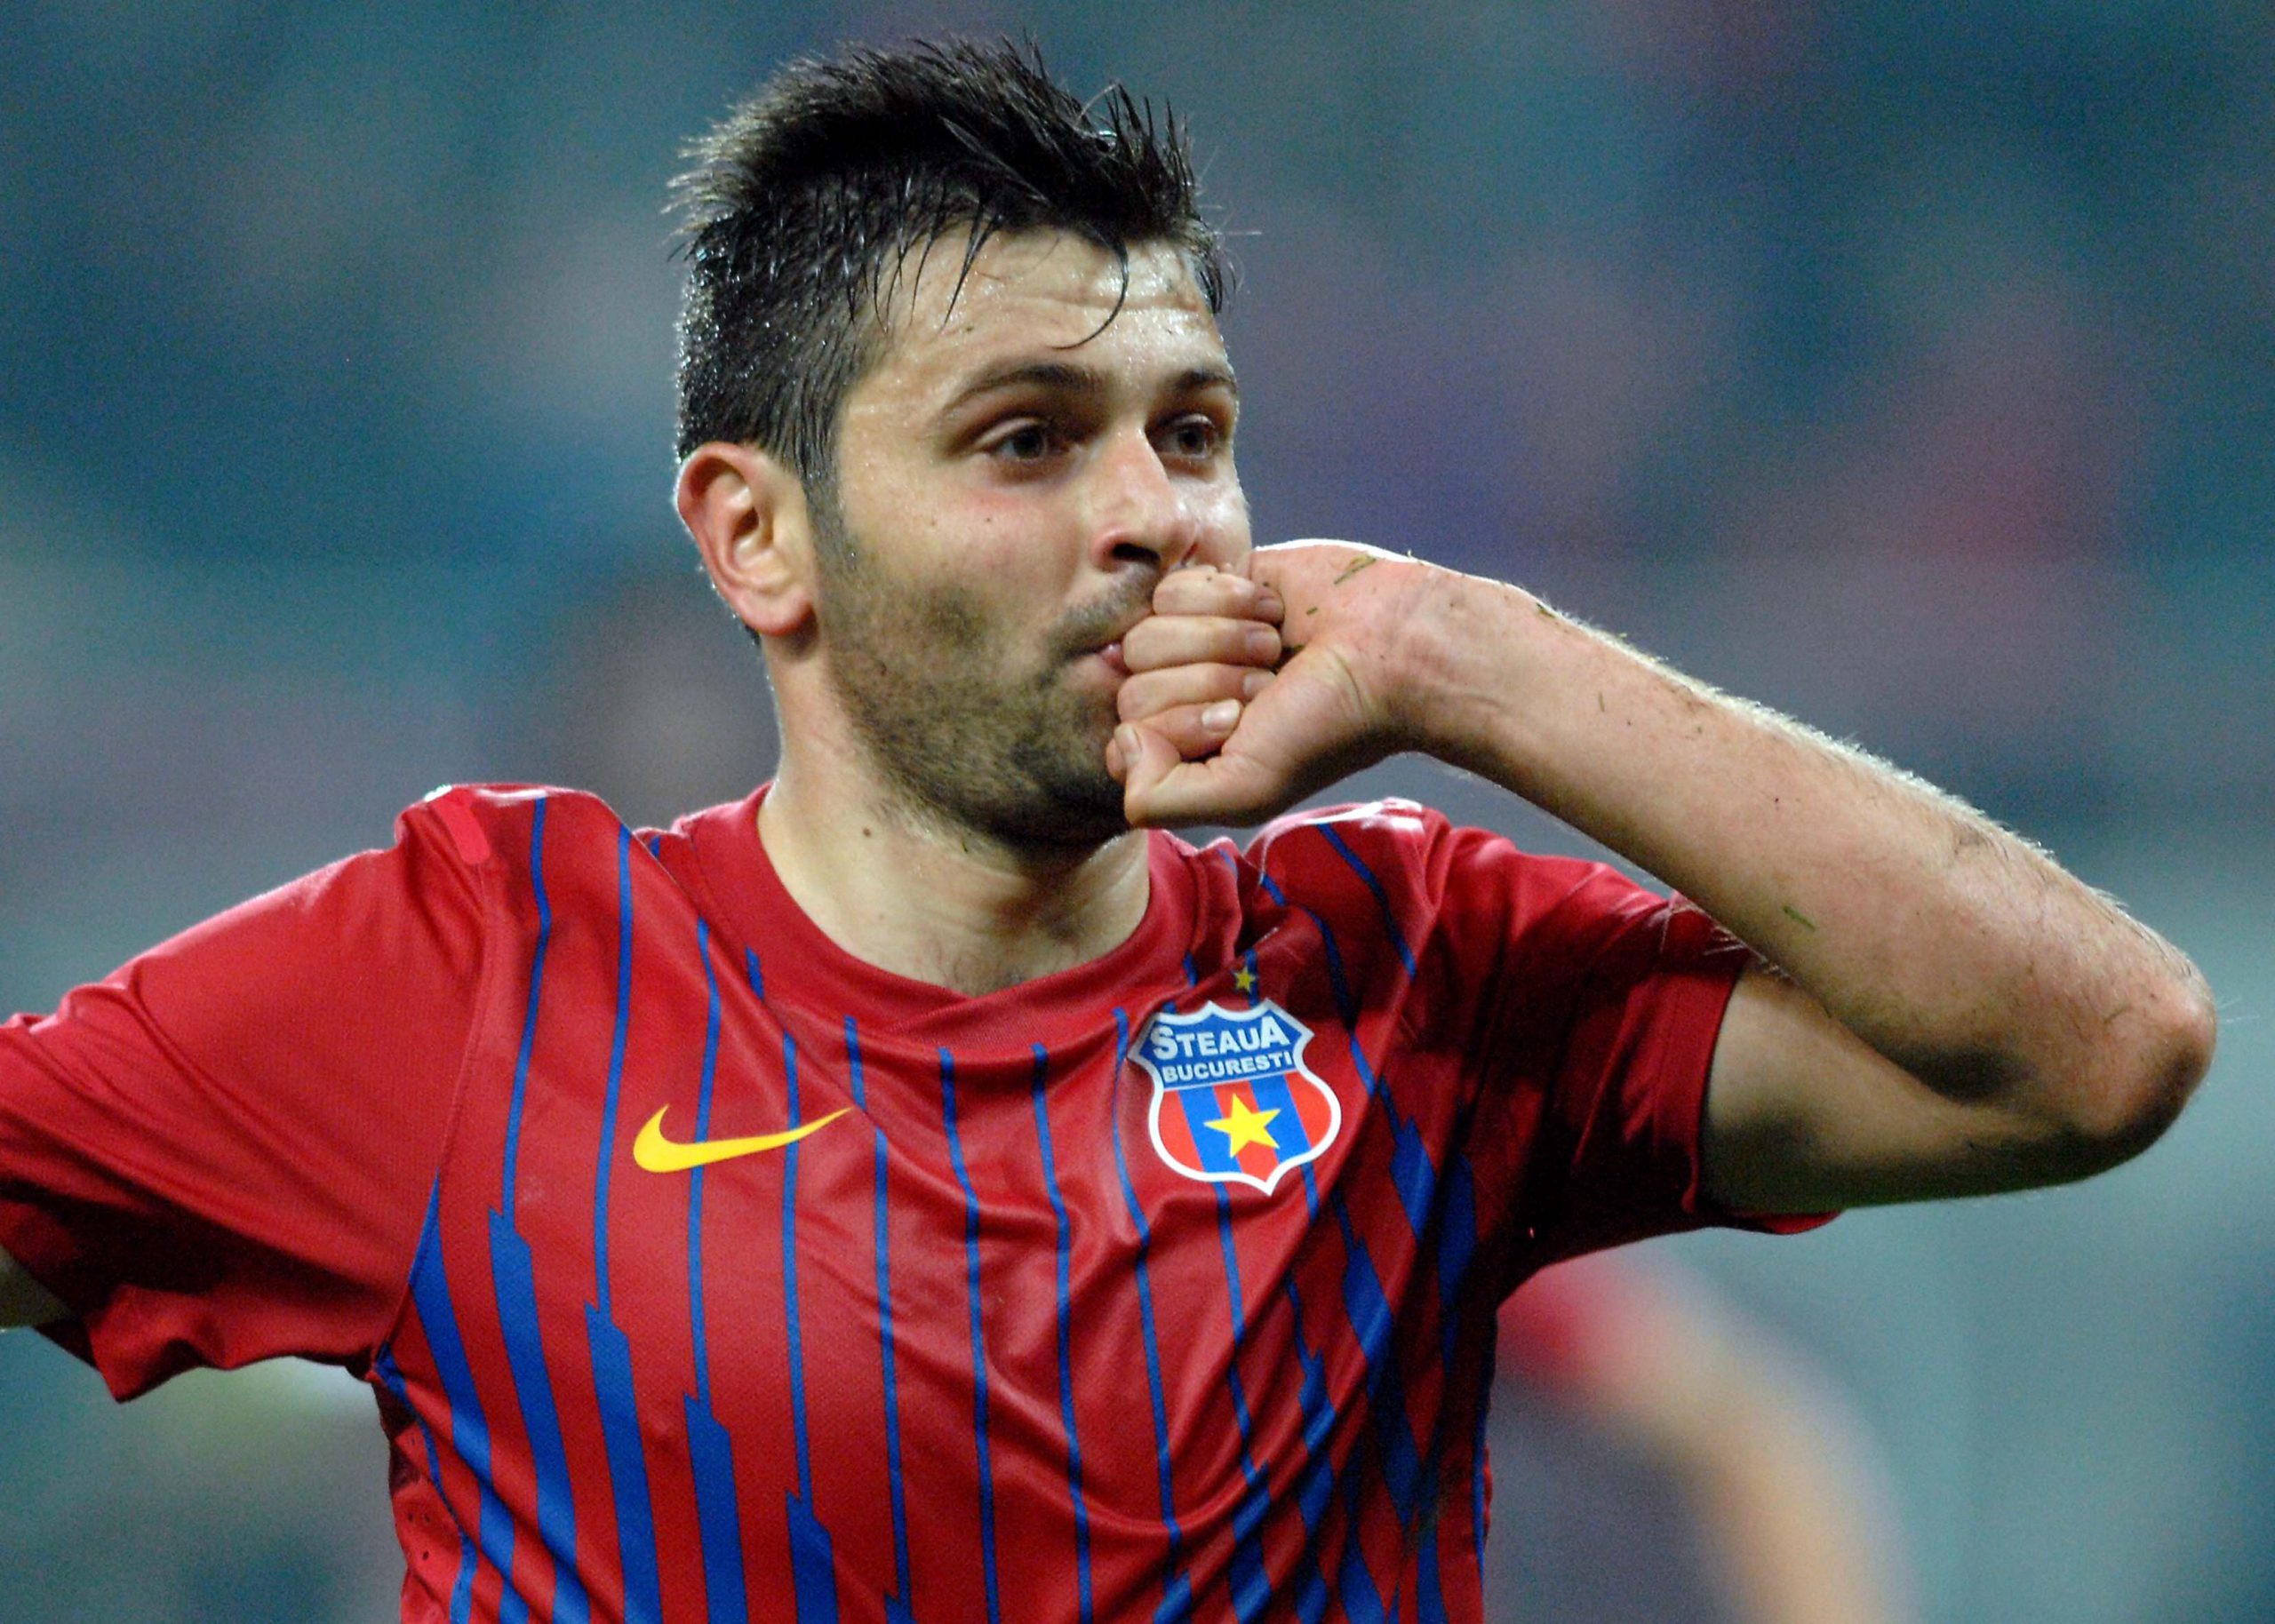  Rusescu a adus victoria echipei Giresunspor în meciul cu Adanaspor prin două goluri marcate